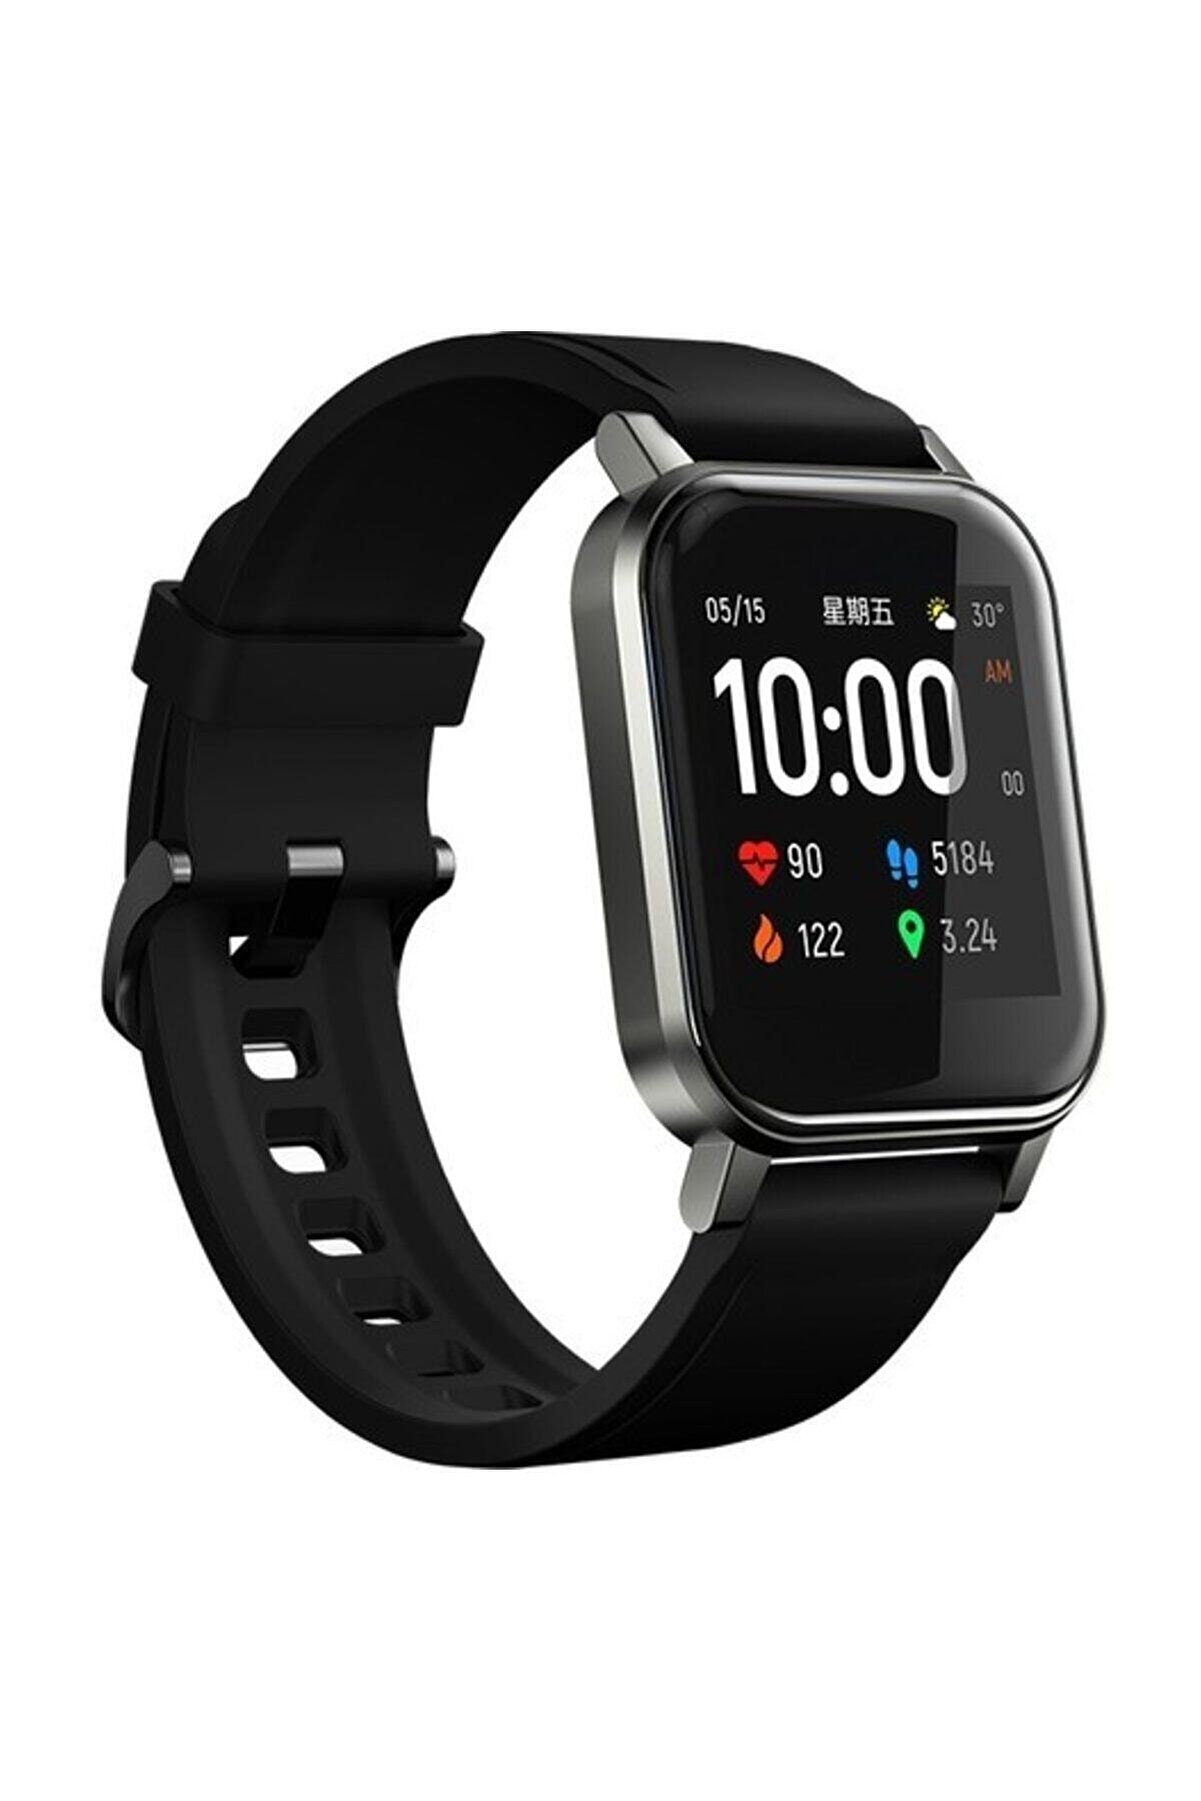 Haylou Ls02 Akıllı Saat, Ios Ve Android Uyumlu, Siyah